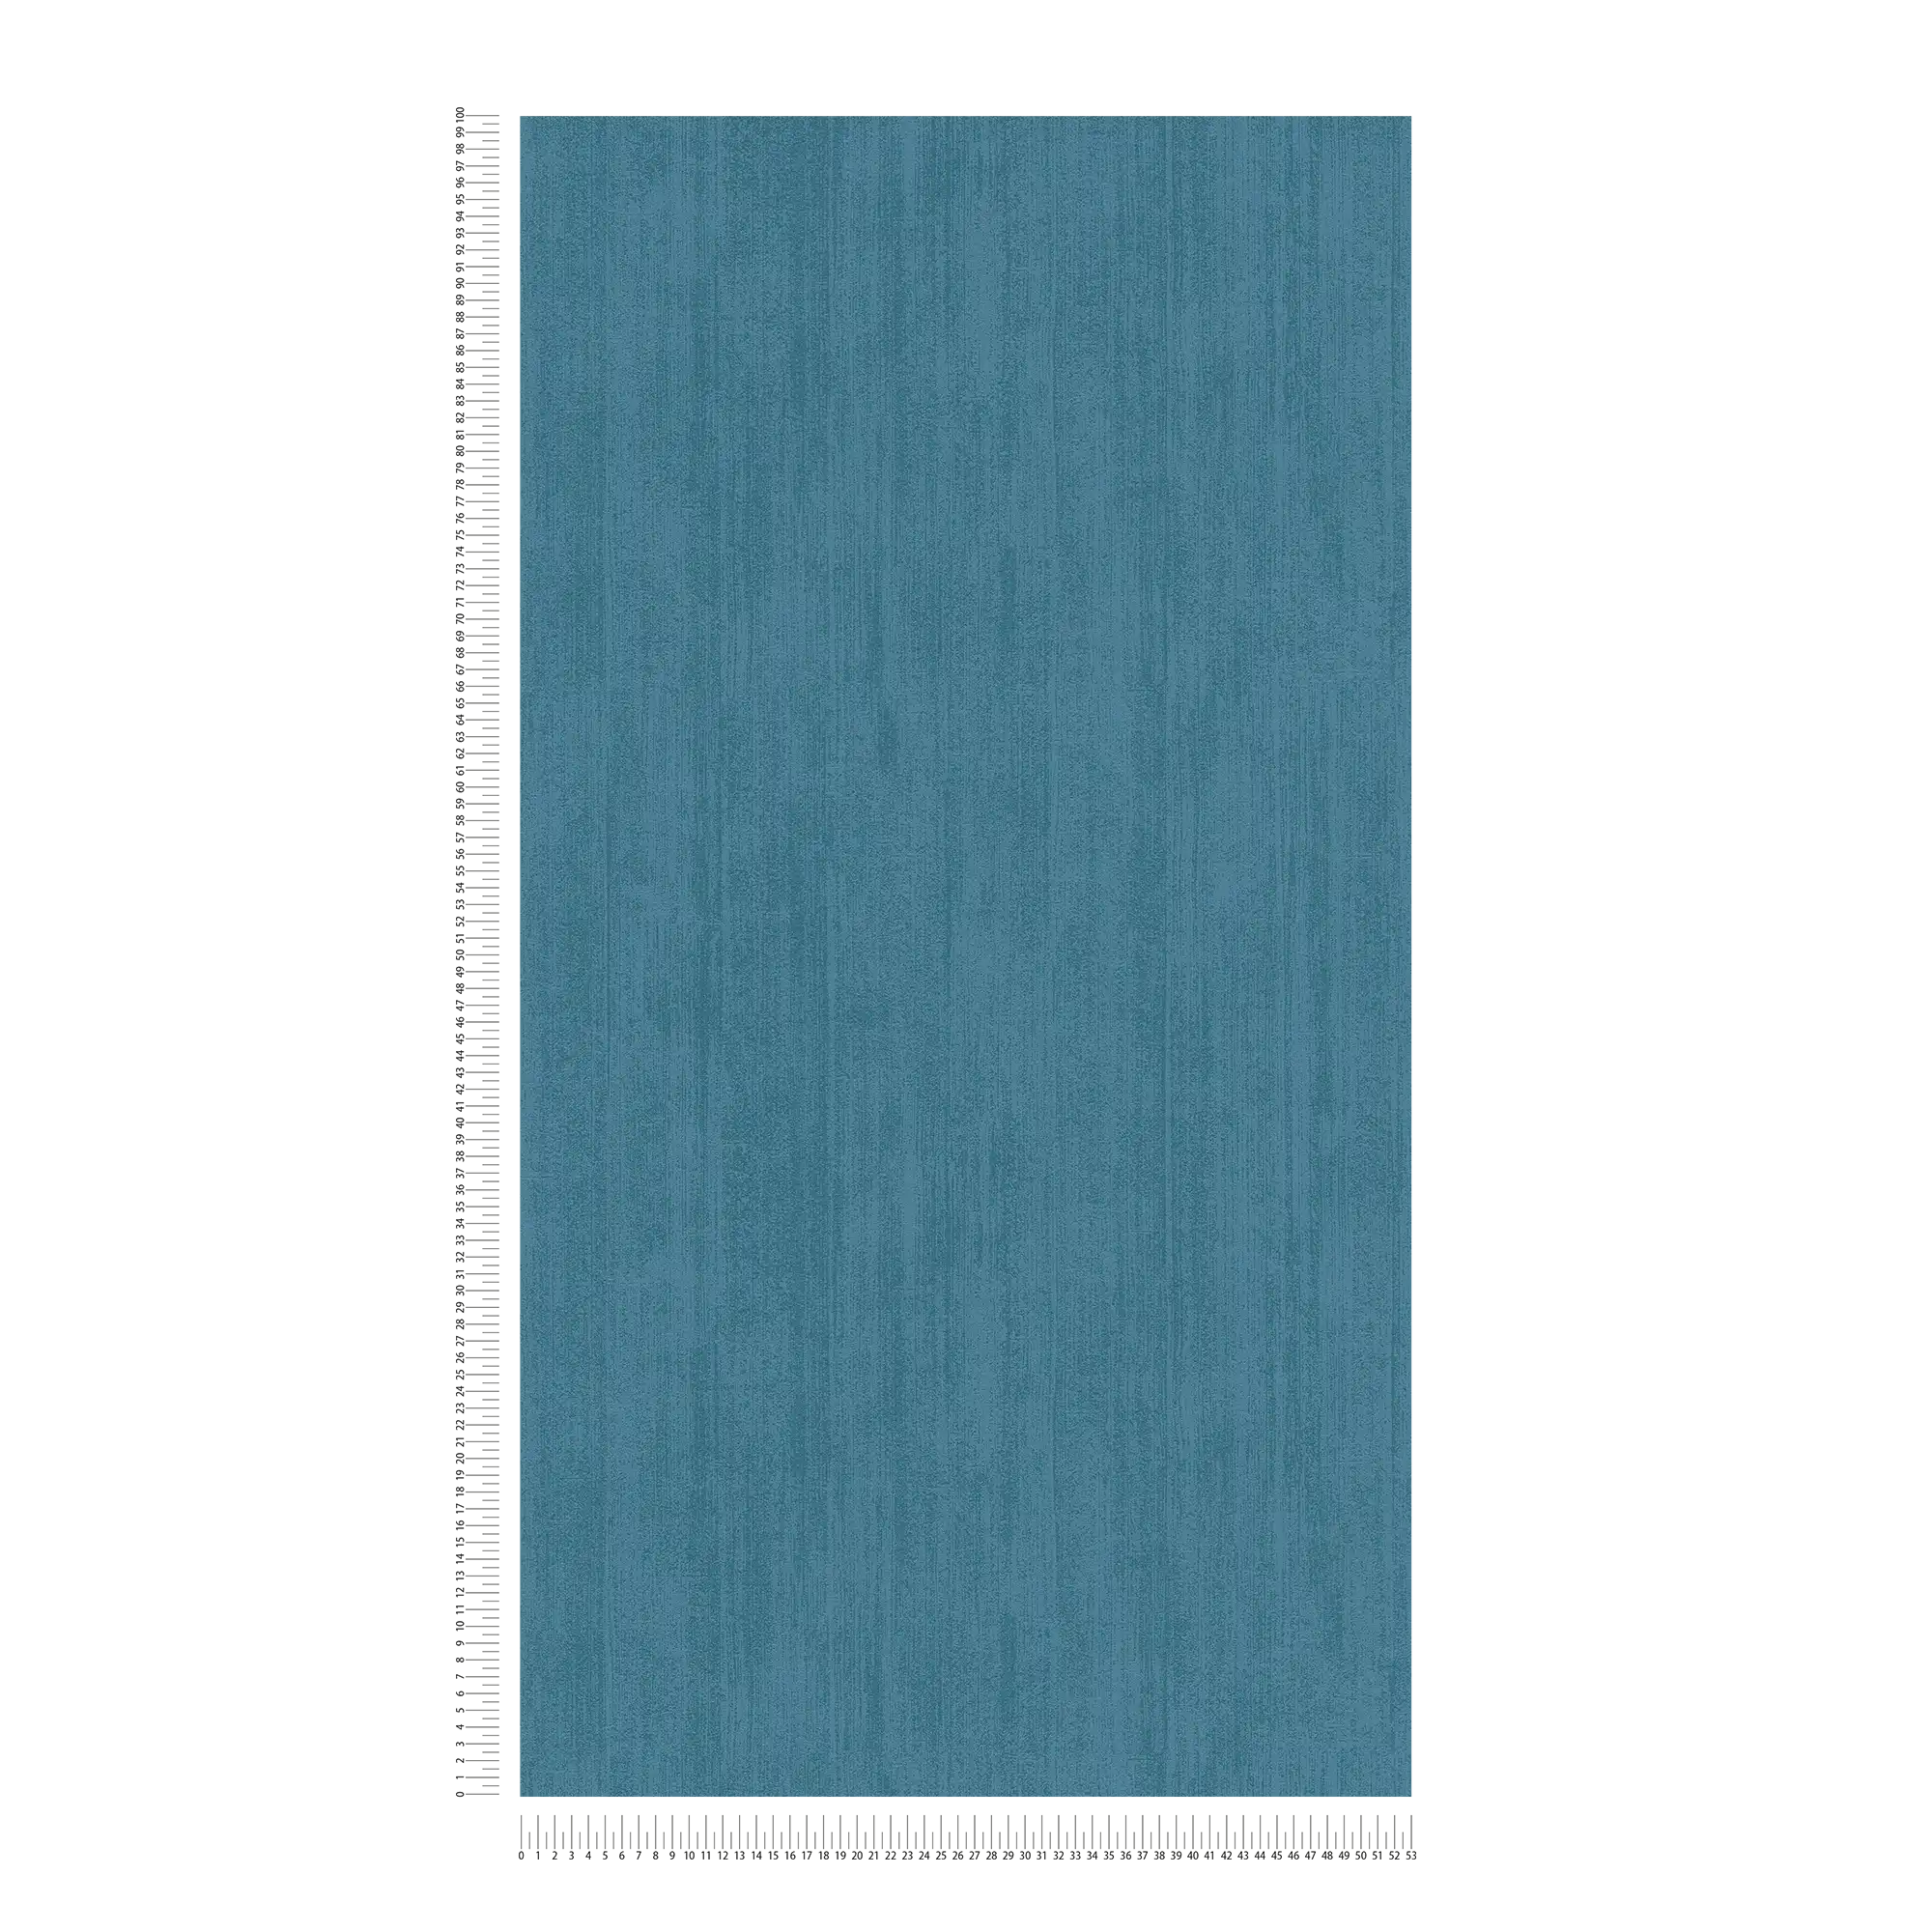             Effen vliesbehang met toon-op-toon arceringen - blauw
        